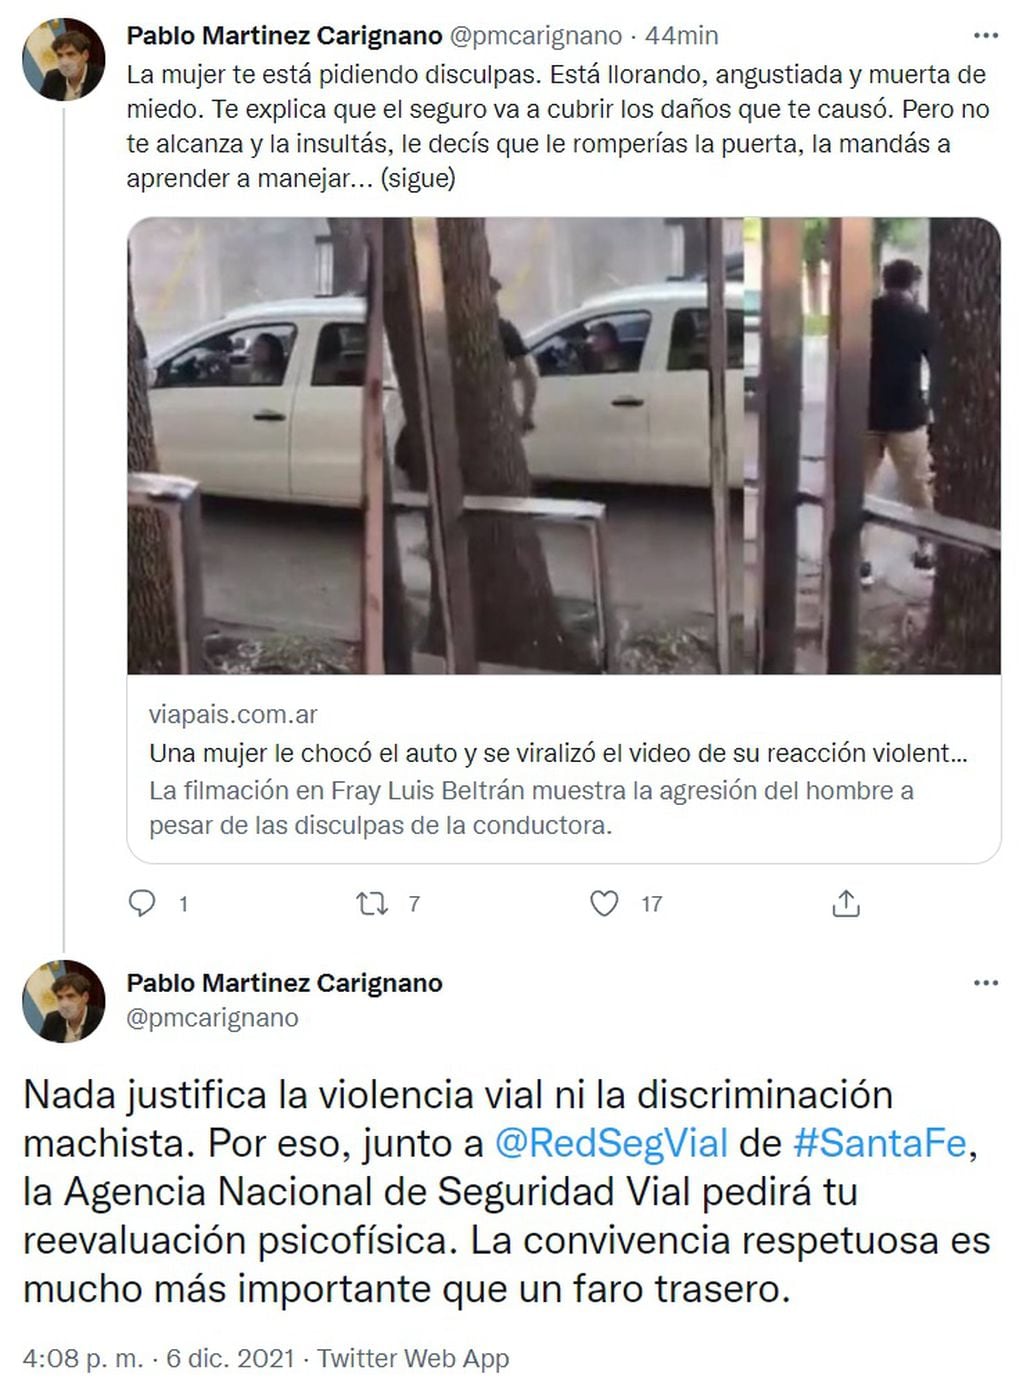 El director de la ANSV repudió la reacción del conductor al que filmaron en Fray Luis Beltrán.